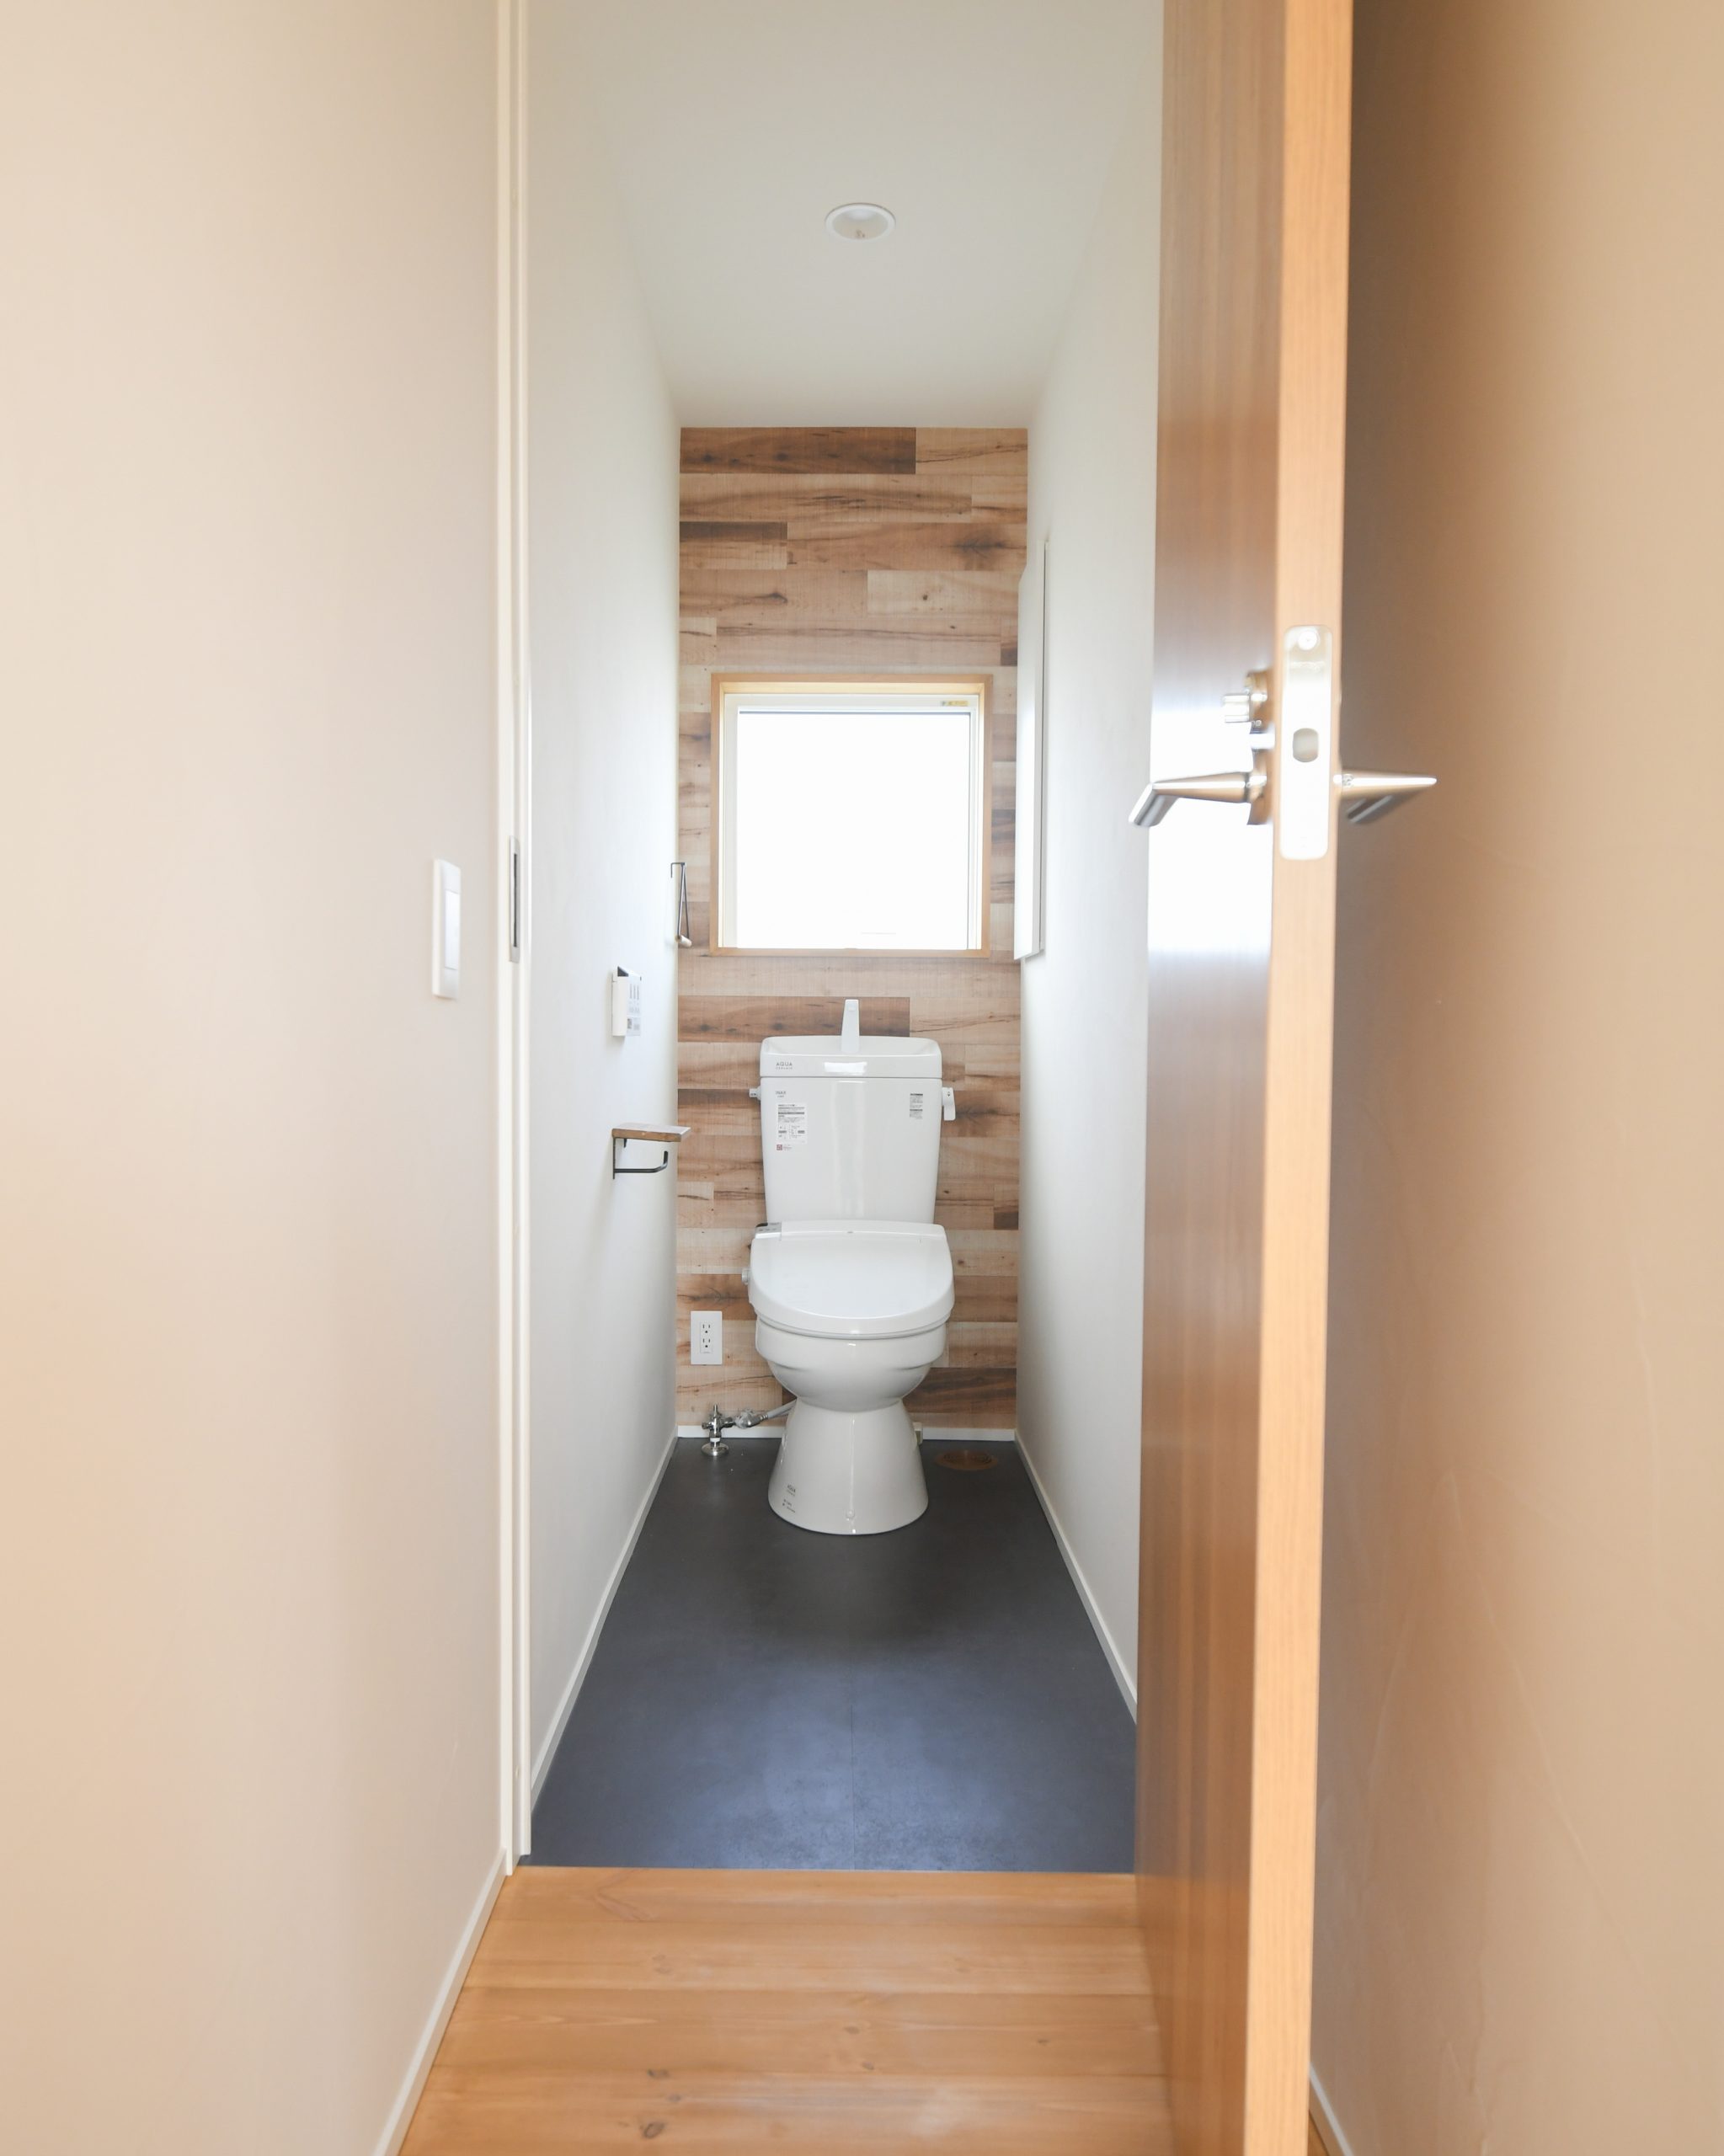 新築住宅 トイレ空間の施工事例② greenhomes